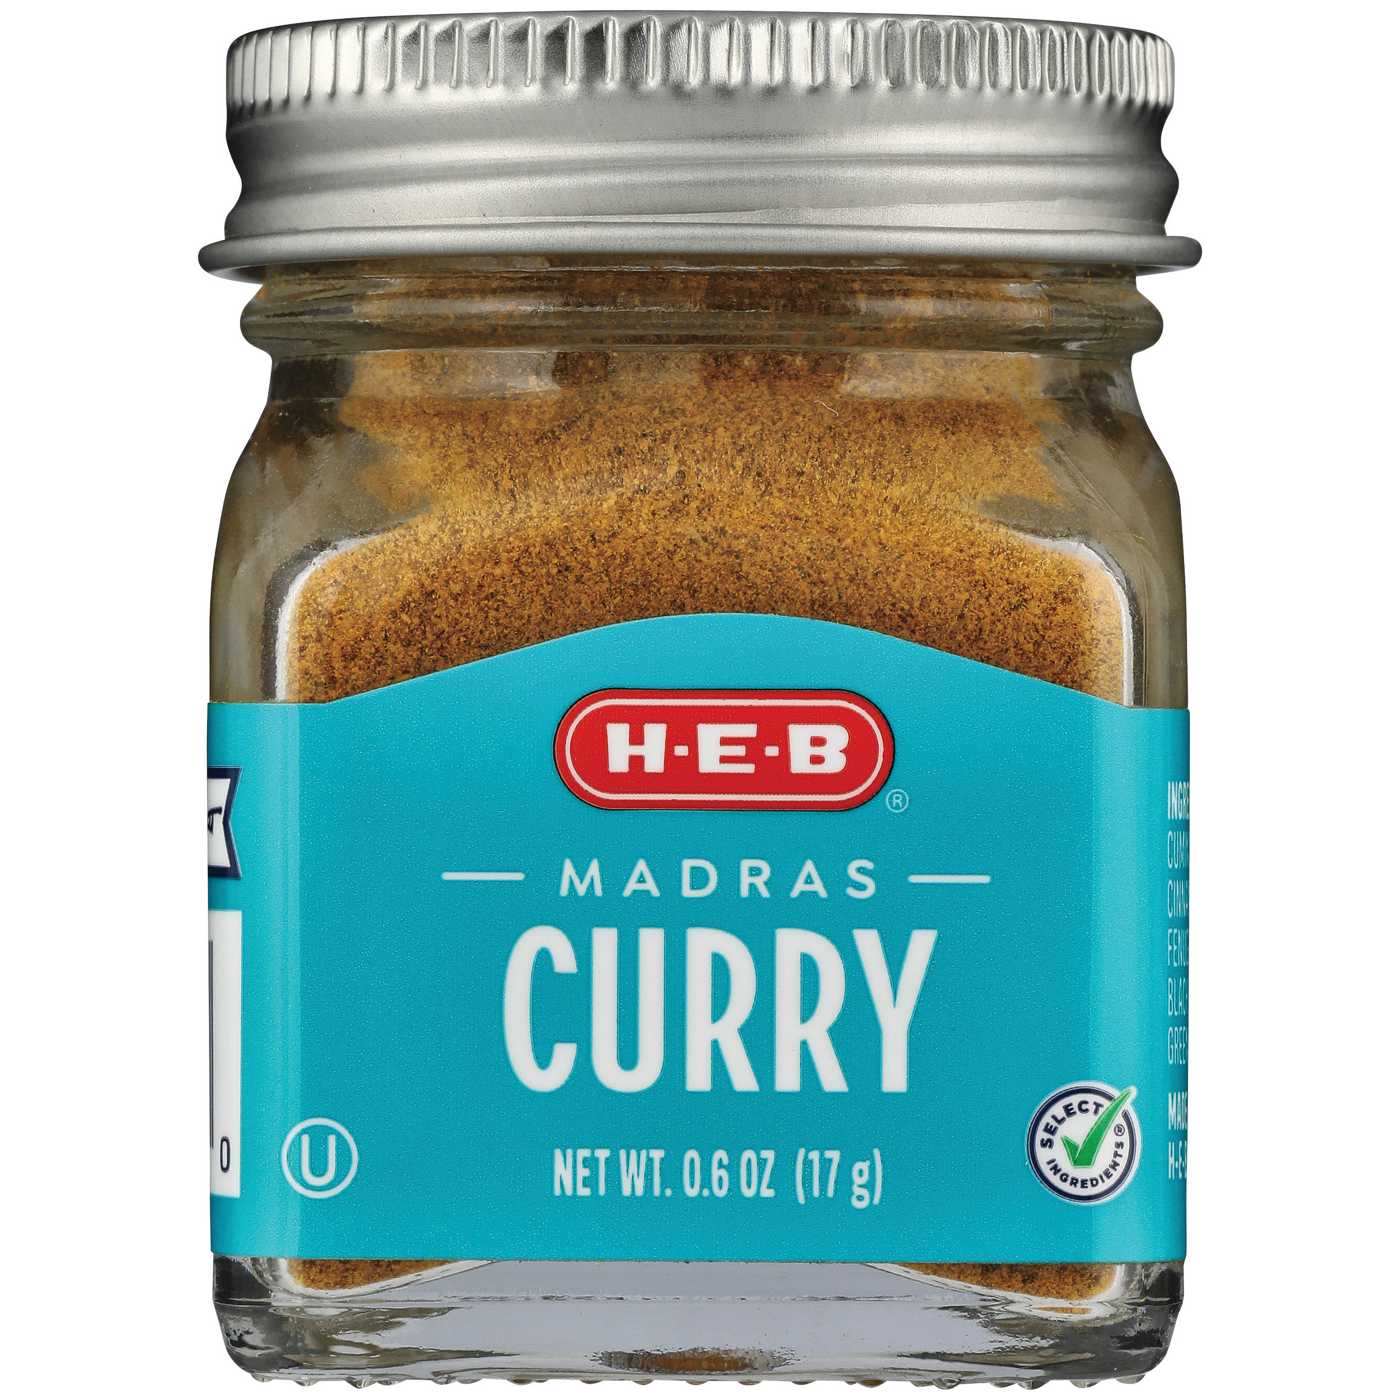 H-E-B Madras Curry Powder; image 1 of 2